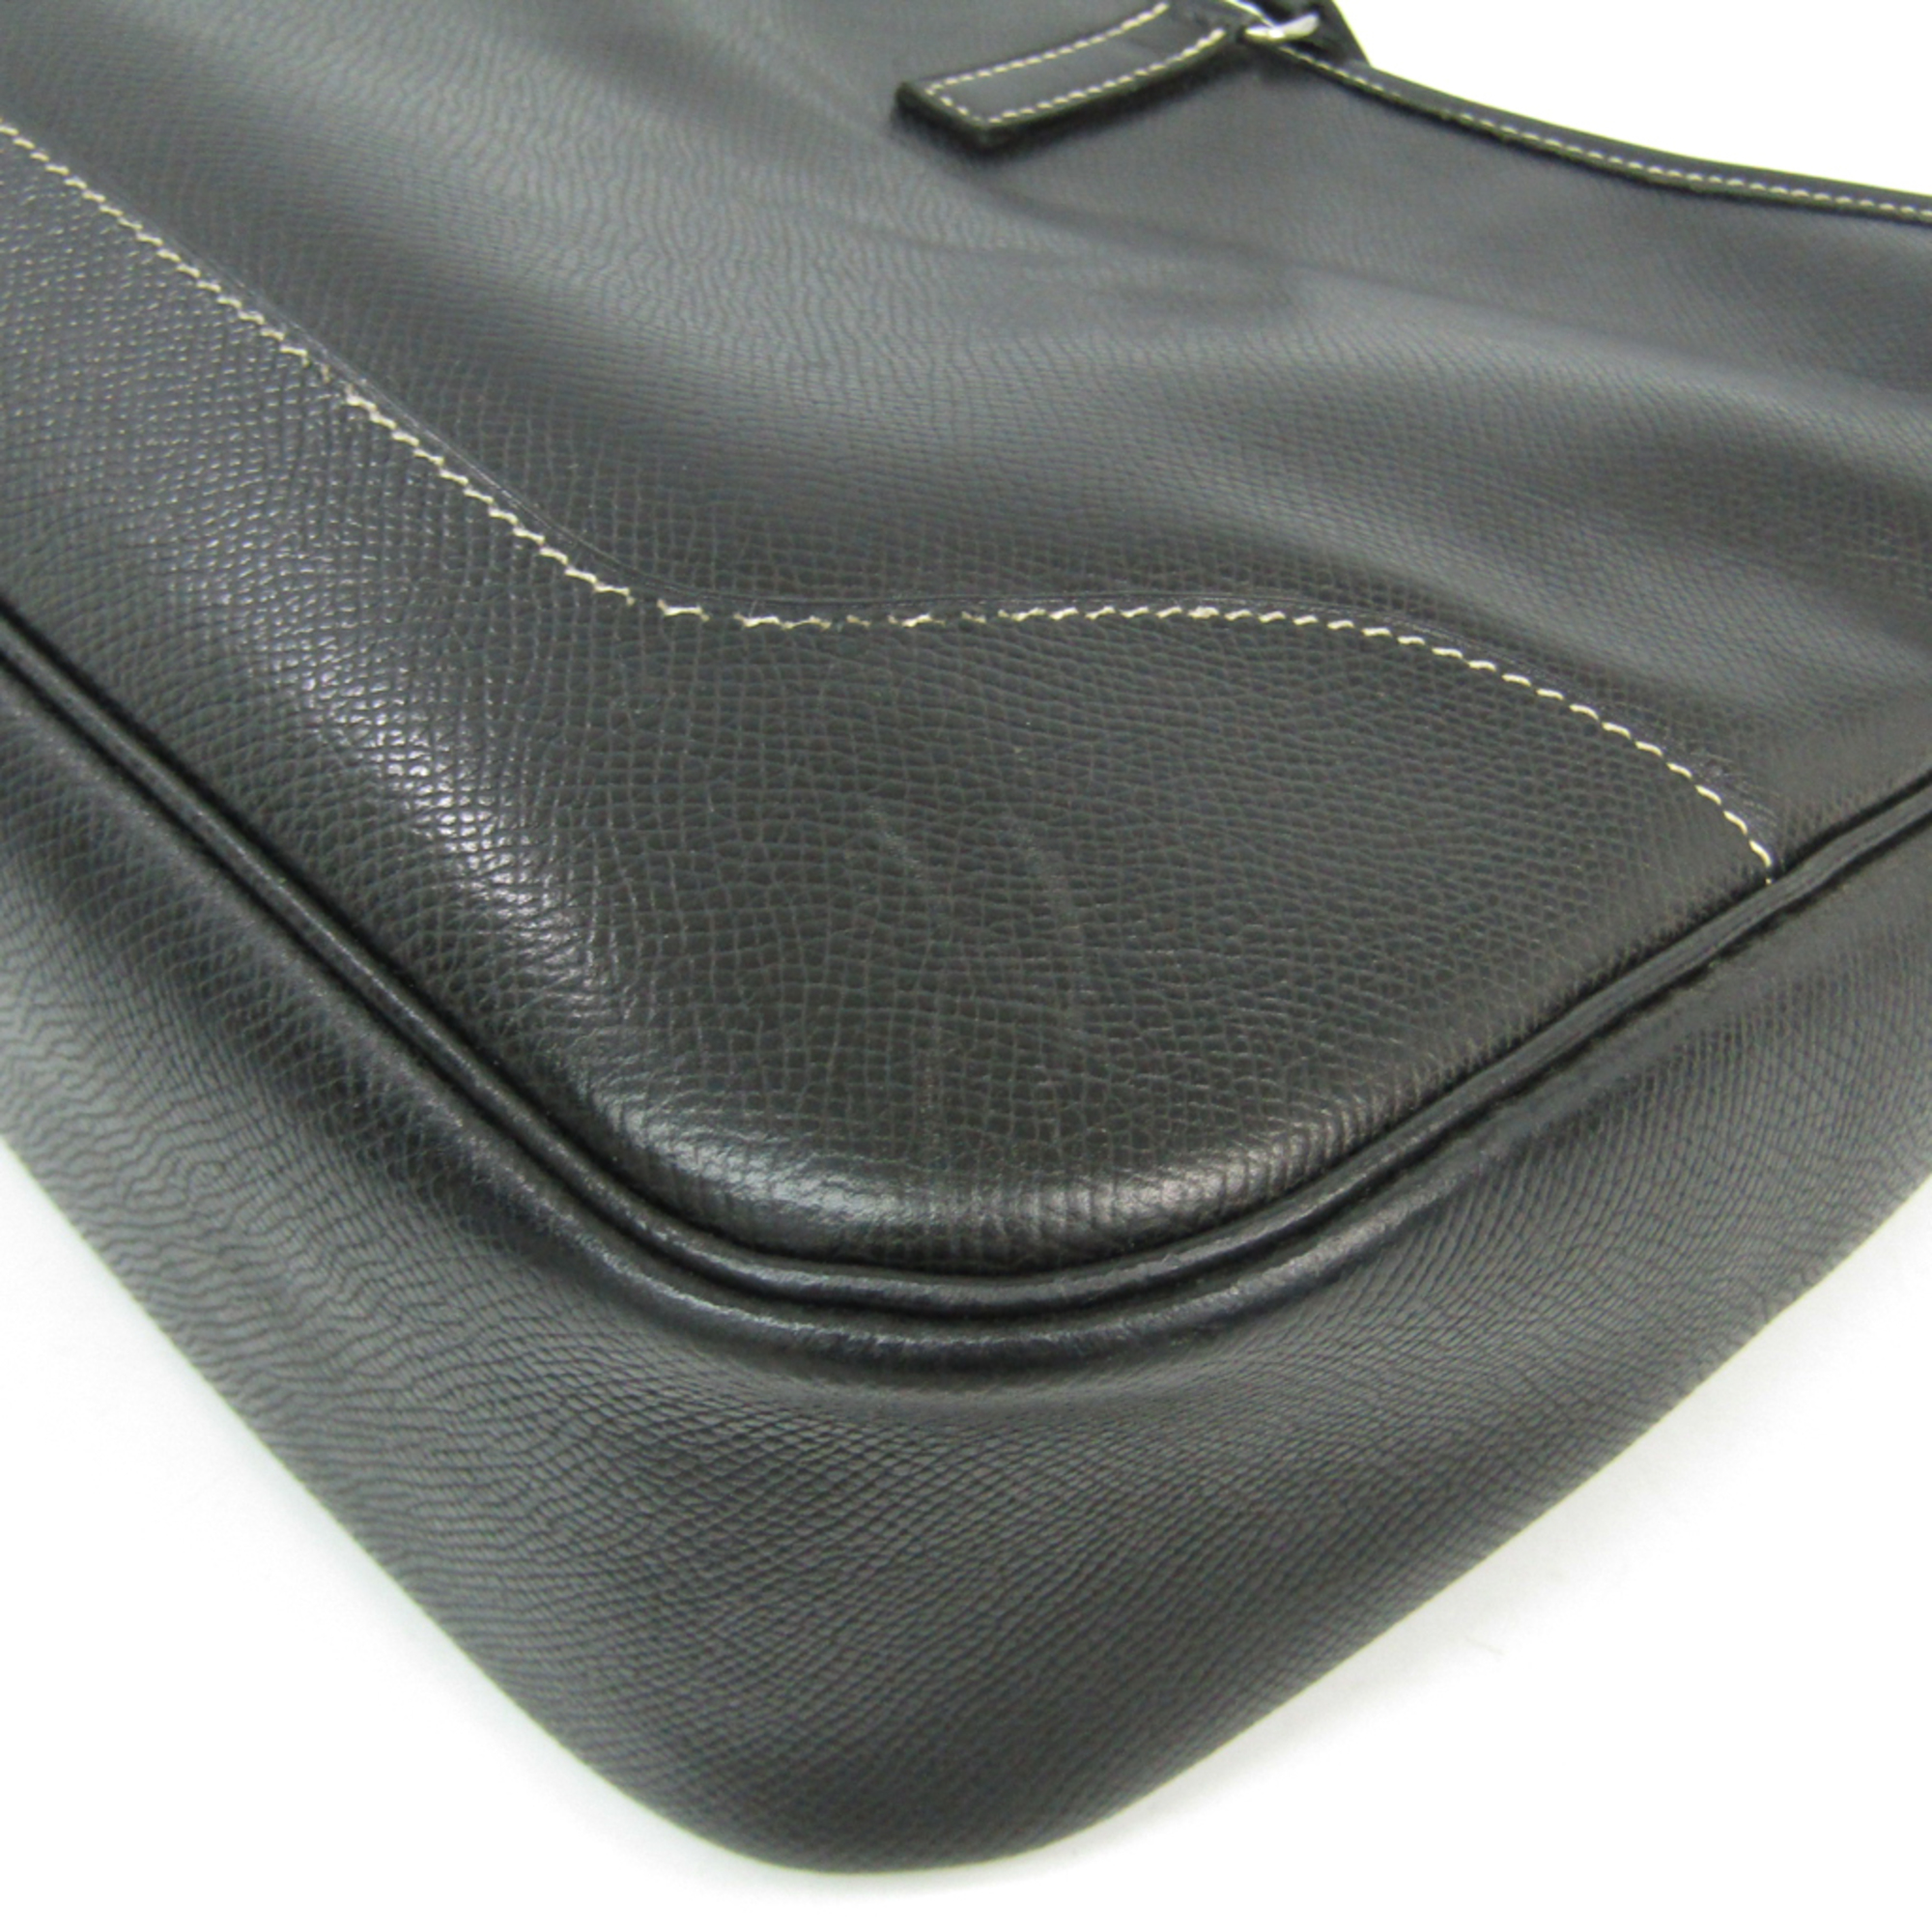 Hermes Trim 31 Women's Courchevel Leather Shoulder Bag Black